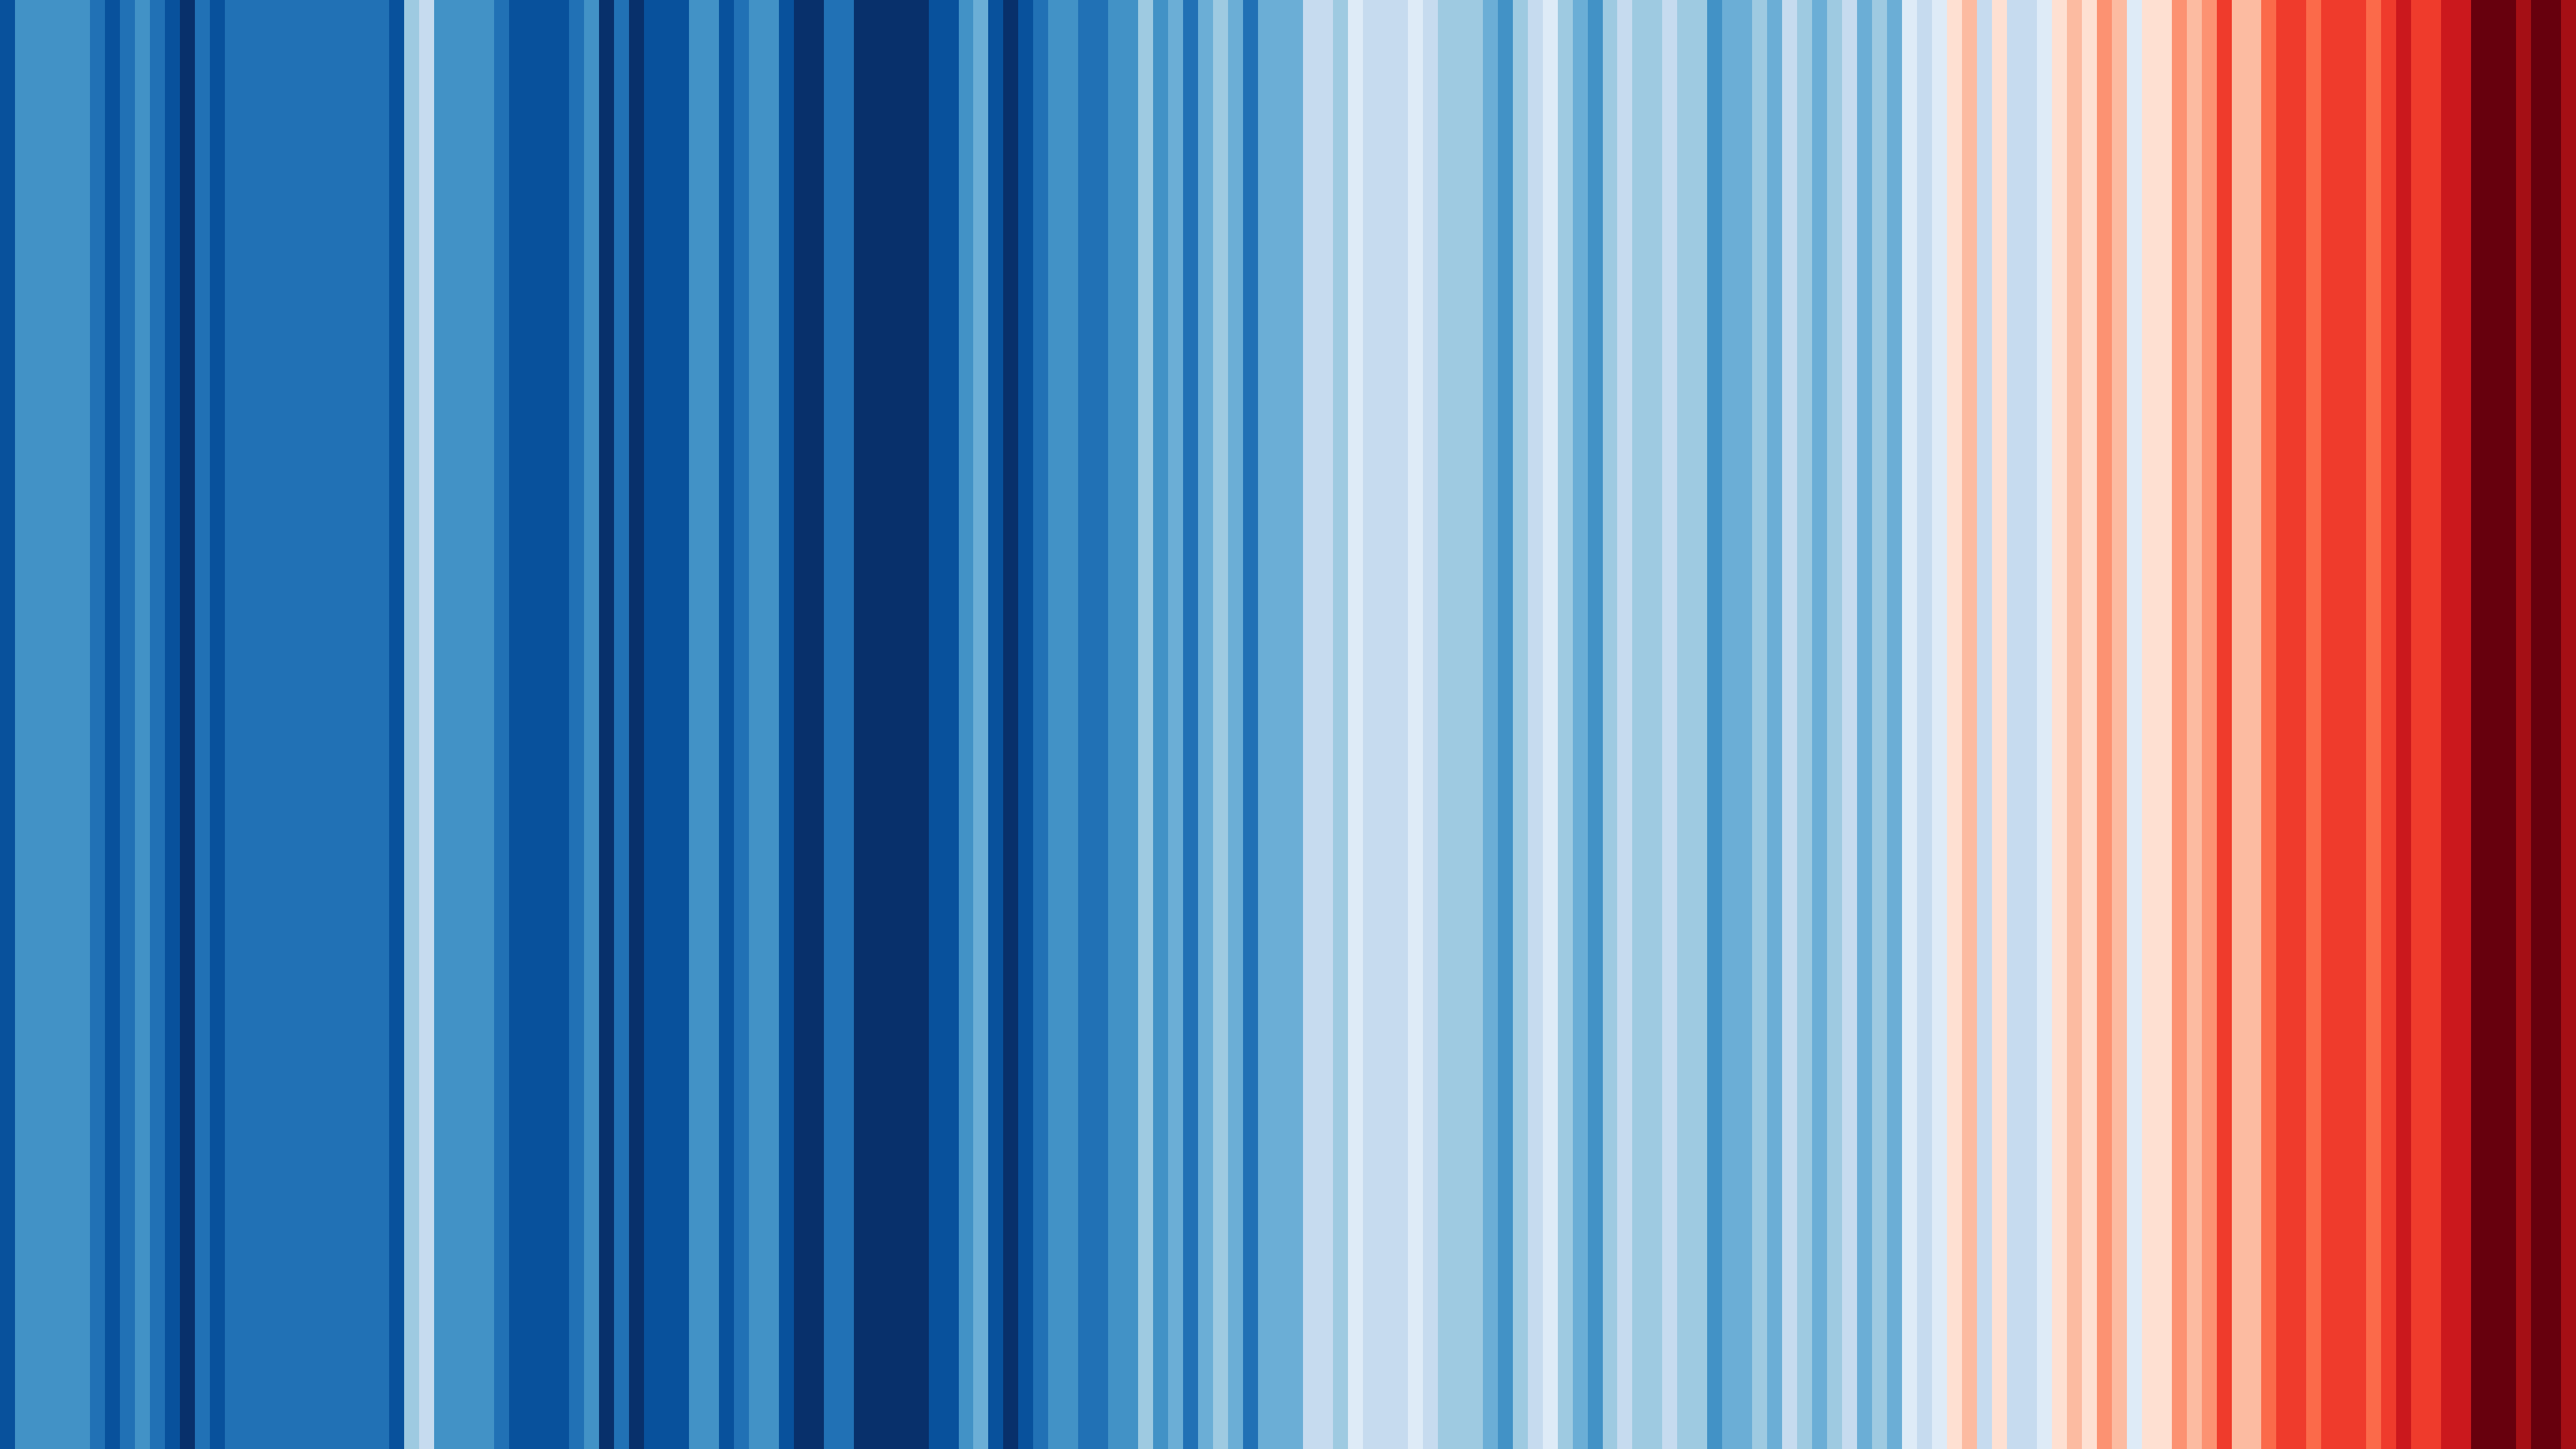 Évolution de la température annuelle moyenne 1850-2021